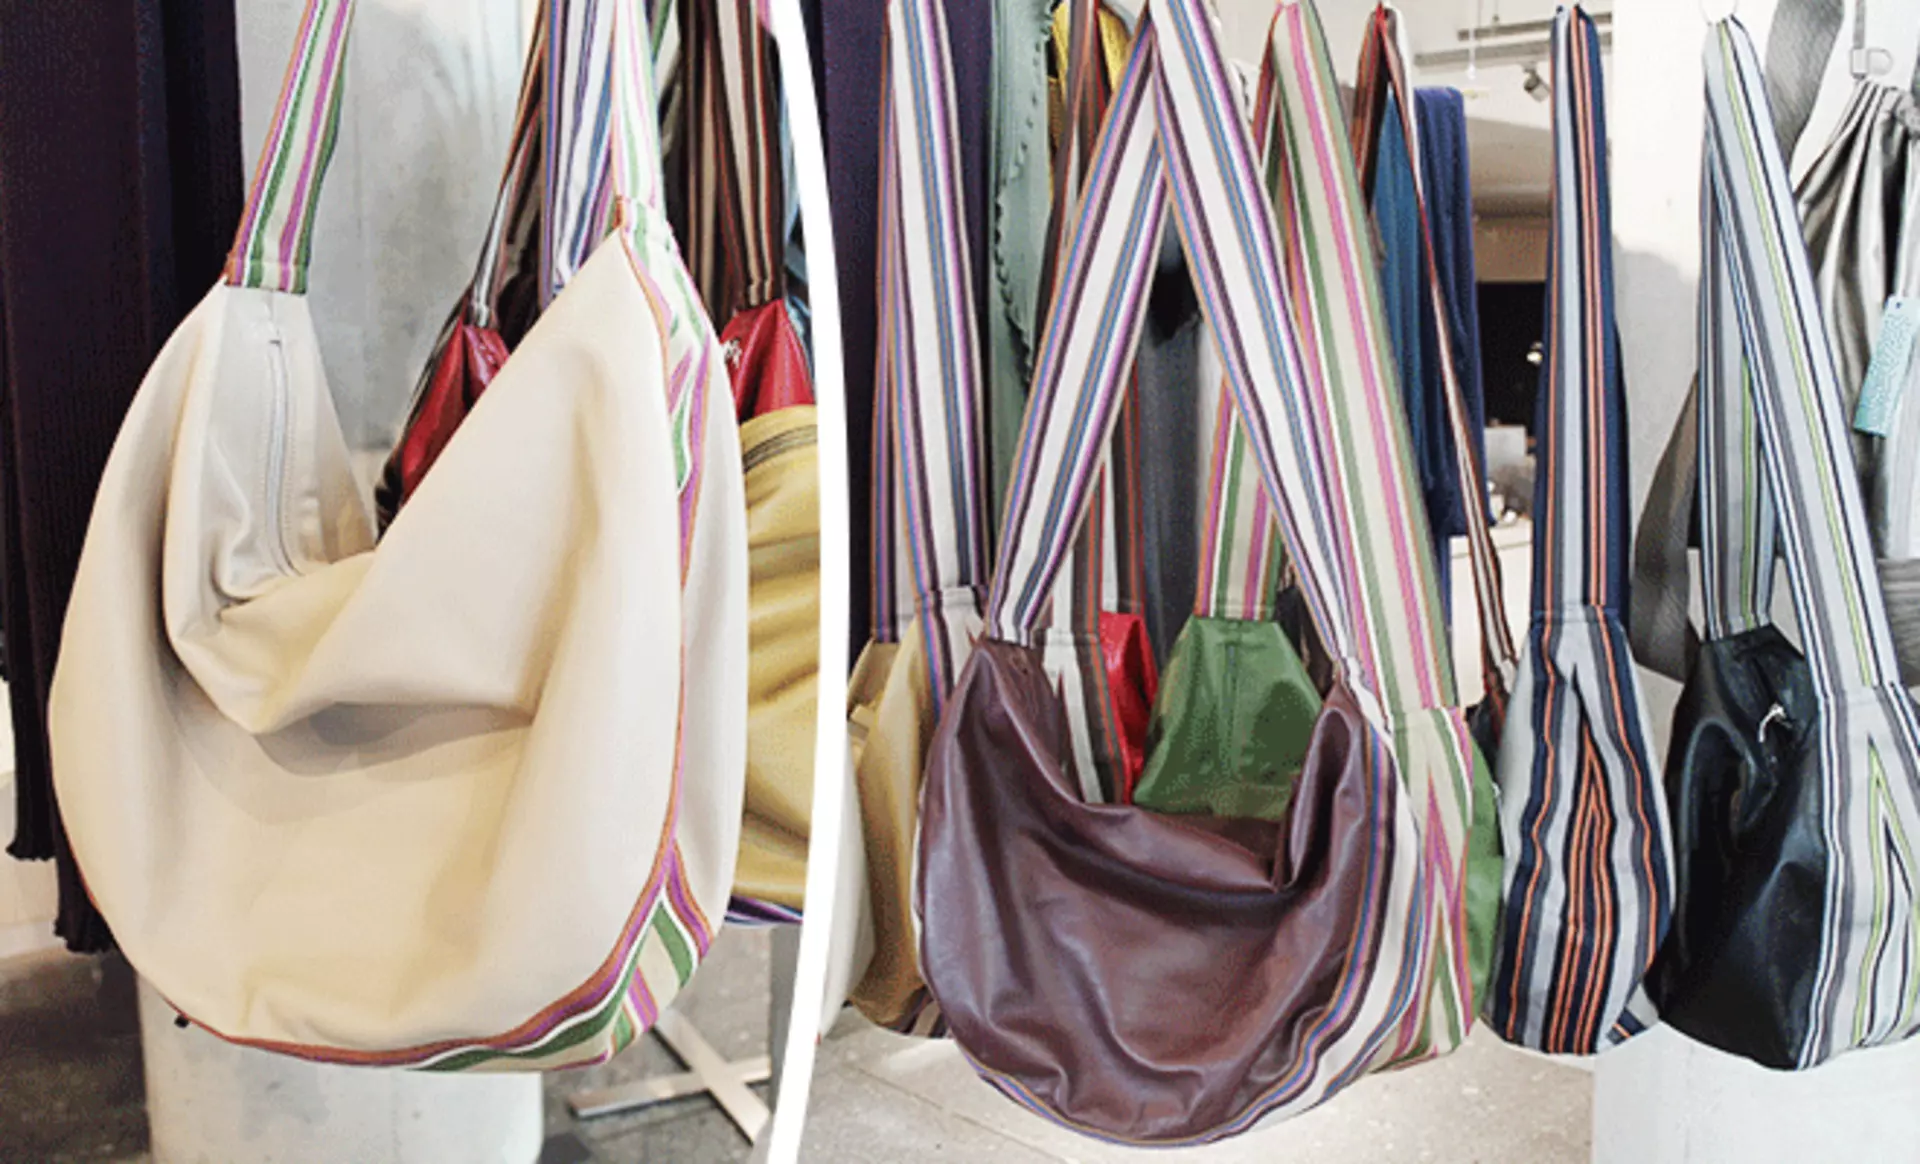 Super leicht und absolut edel - Handtaschen aus Lammleder sind perfekte Begleiter für jeden Tag